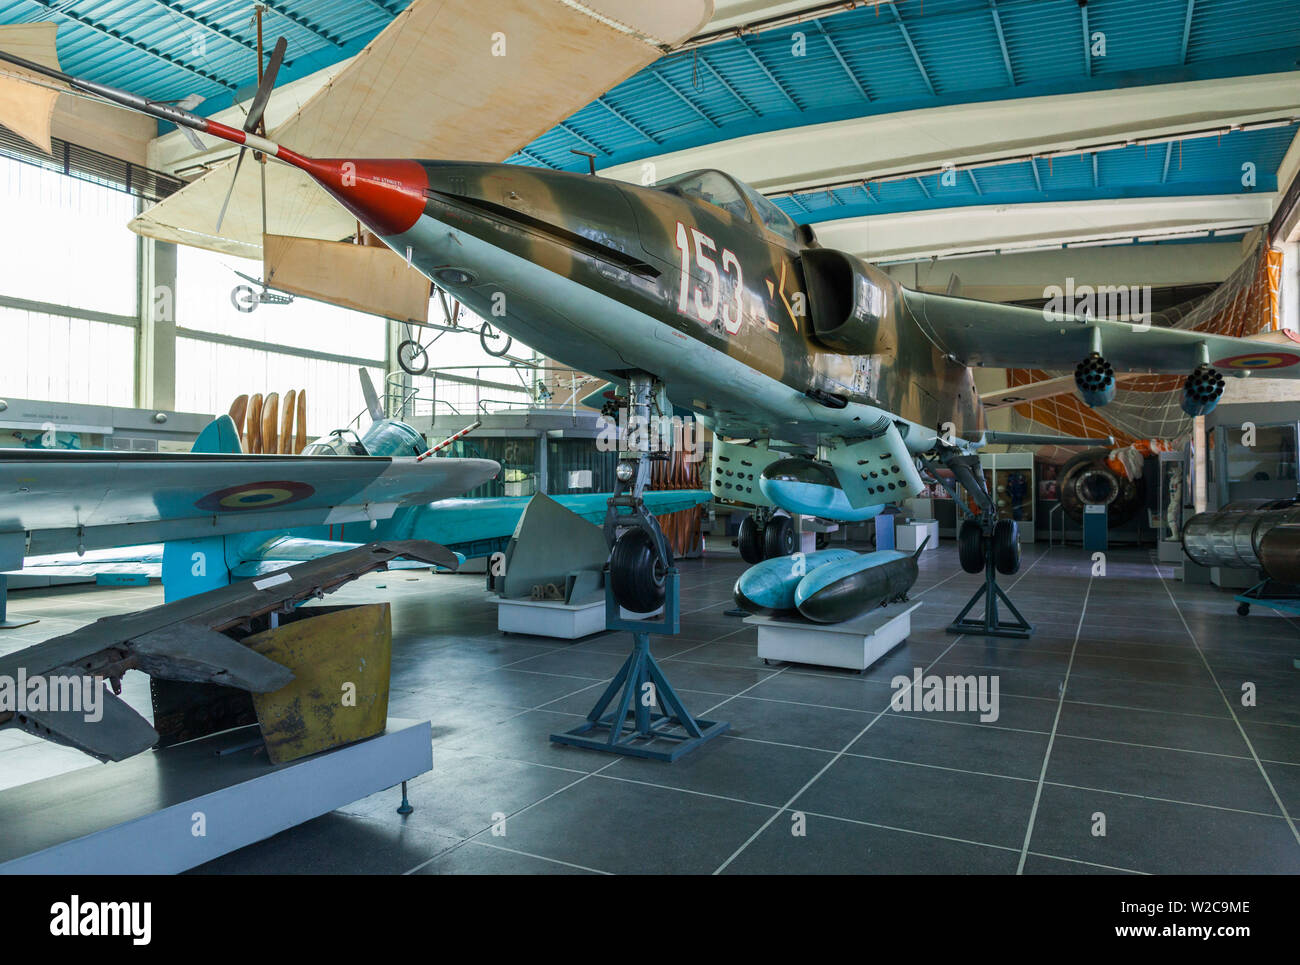 Roumanie, Bucarest, Musée Militaire National, Roumain-construit, à l'époque de la guerre froide, l'IAR-93 Vautour, des avions d'attaque au sol Banque D'Images